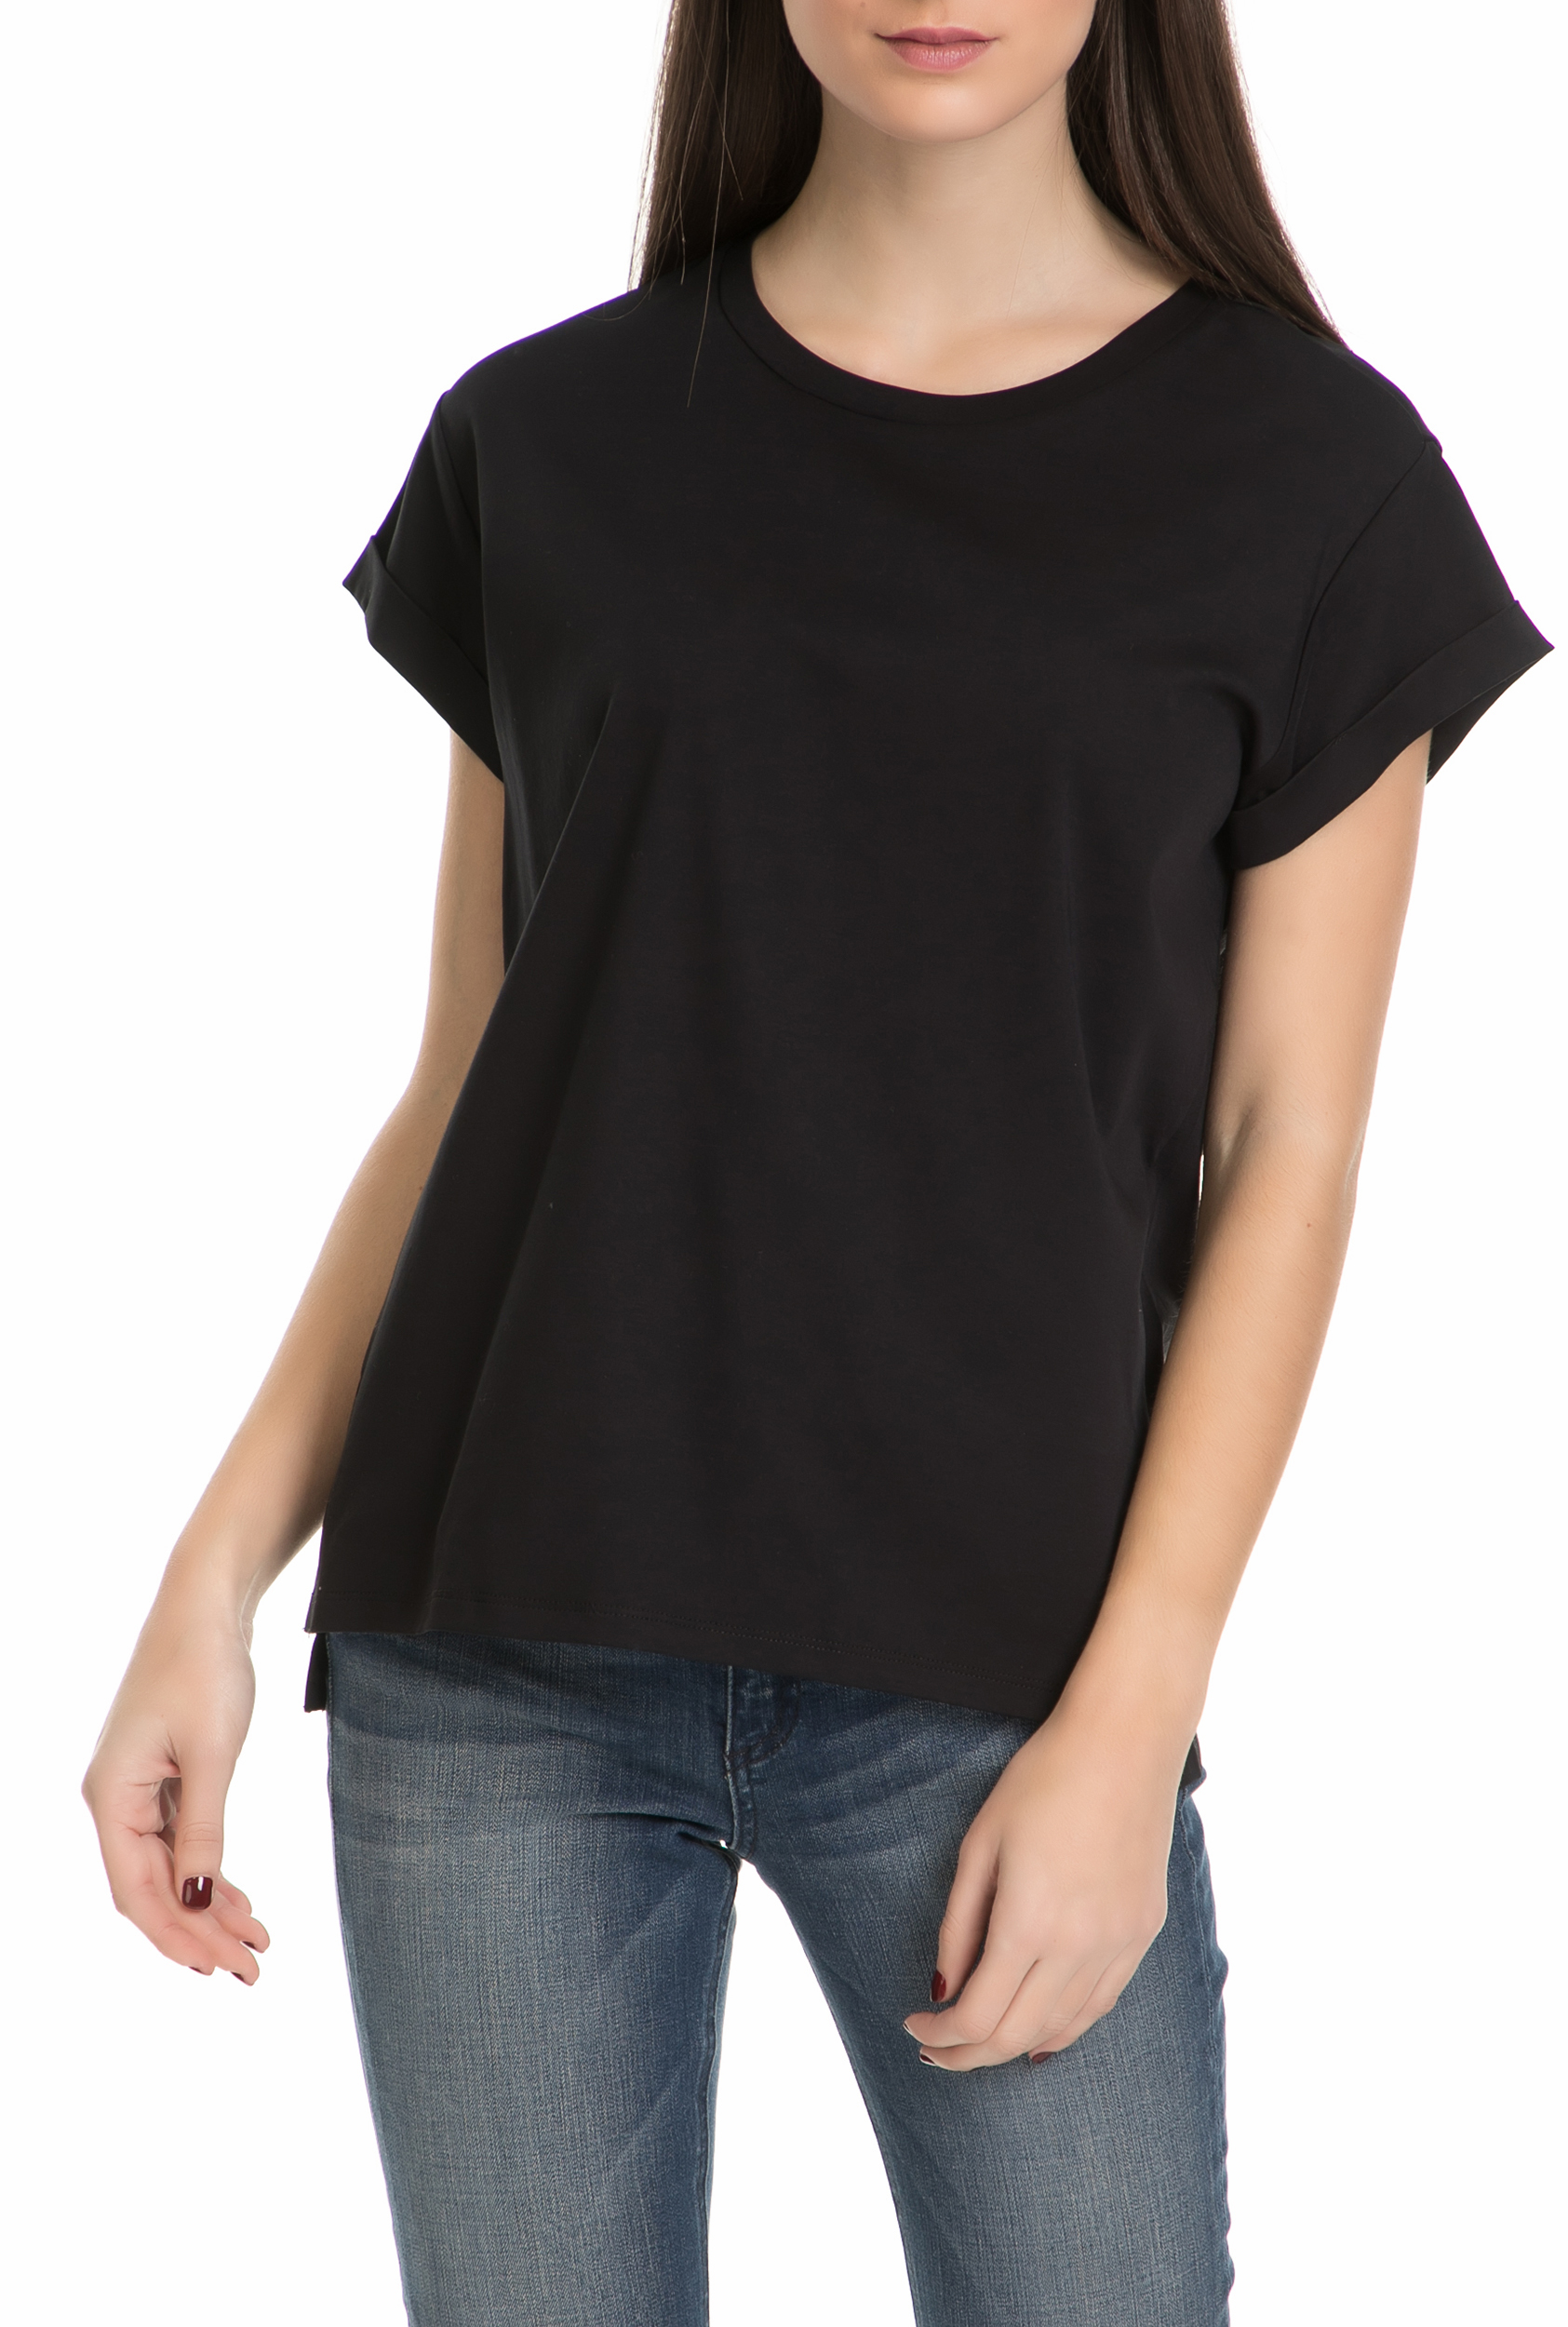 Γυναικεία/Ρούχα/Μπλούζες/Κοντομάνικες SCOTCH & SODA - Γυναικείο T-shirt SCOTCH & SODA μαύρο